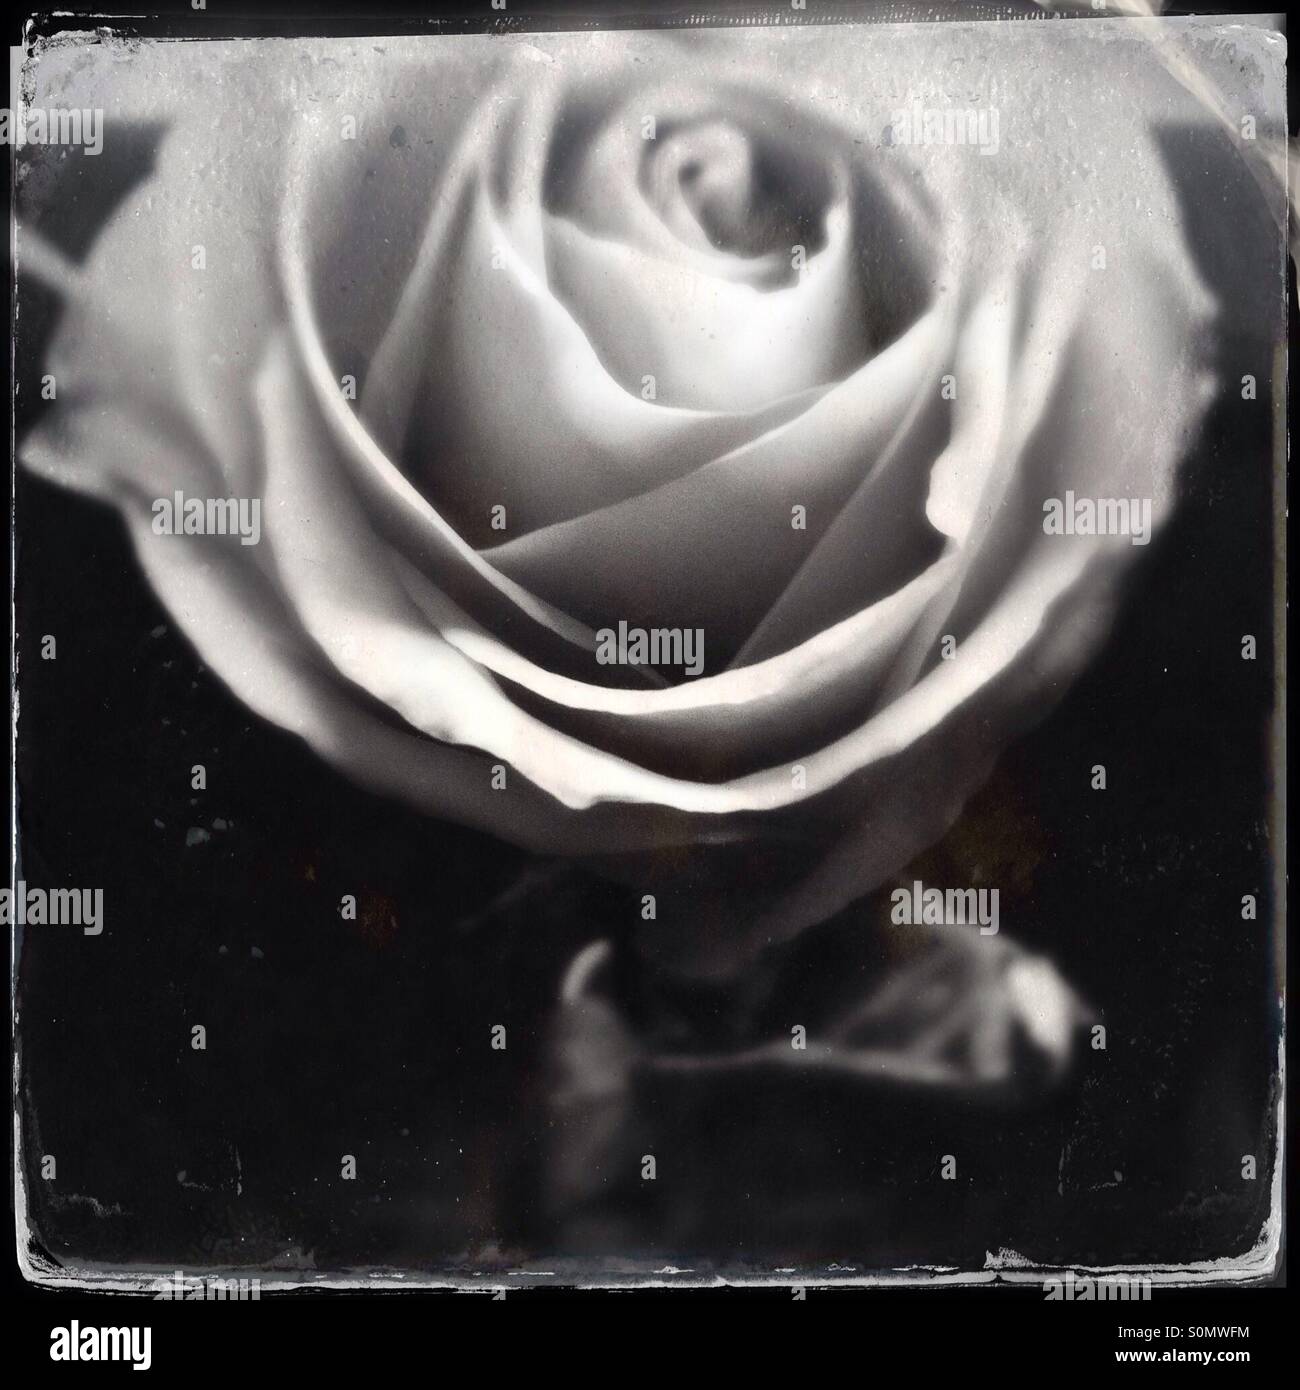 Vintage piastra umida come foto in bianco e nero di un unica rosa, shot close up da sopra Foto Stock